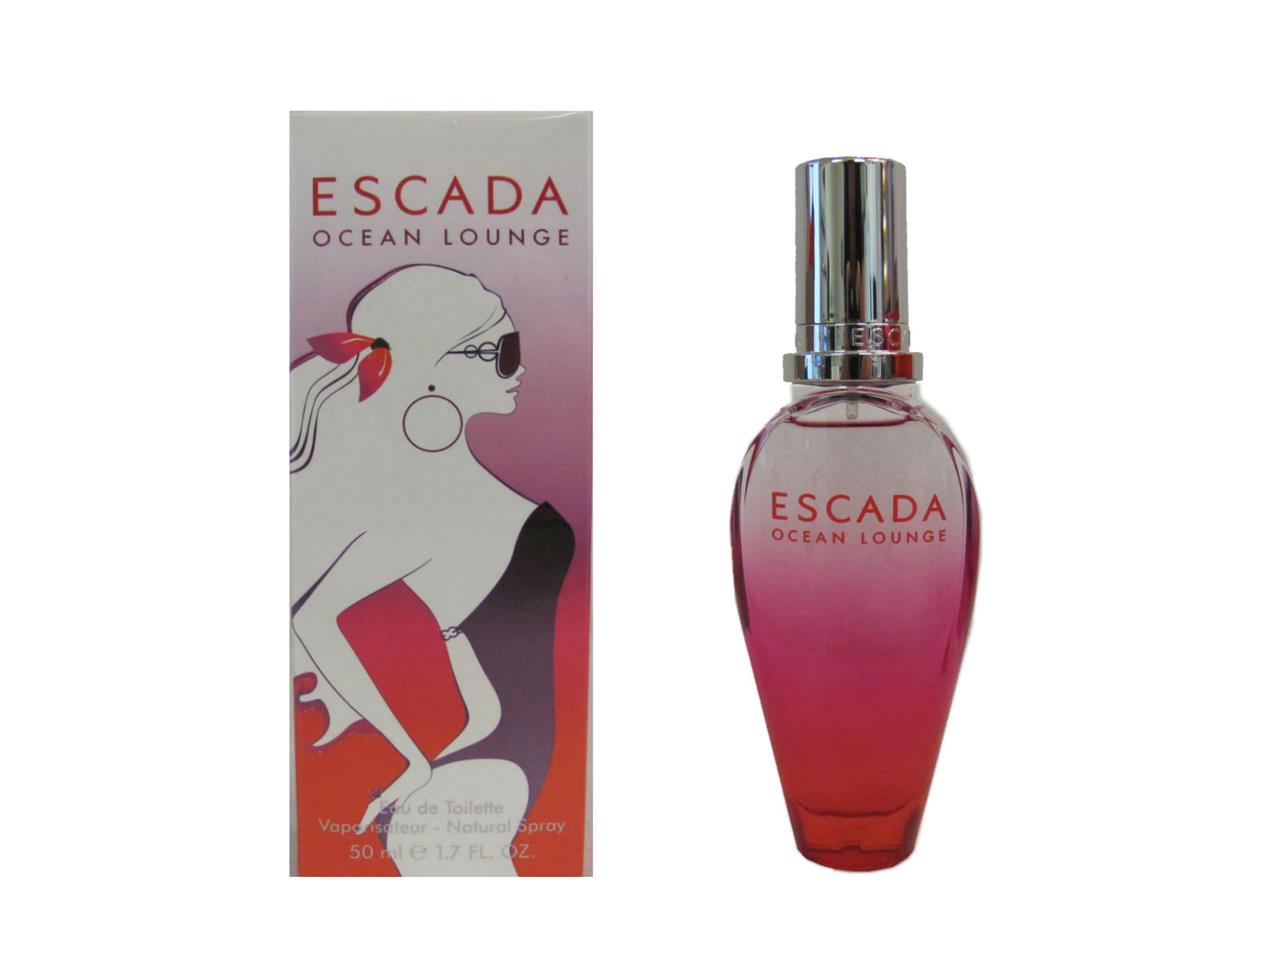 ESCADA OCEAN LOUNGE by Escada 1.7 Oz Eau de Toilette Spray Women (New ...